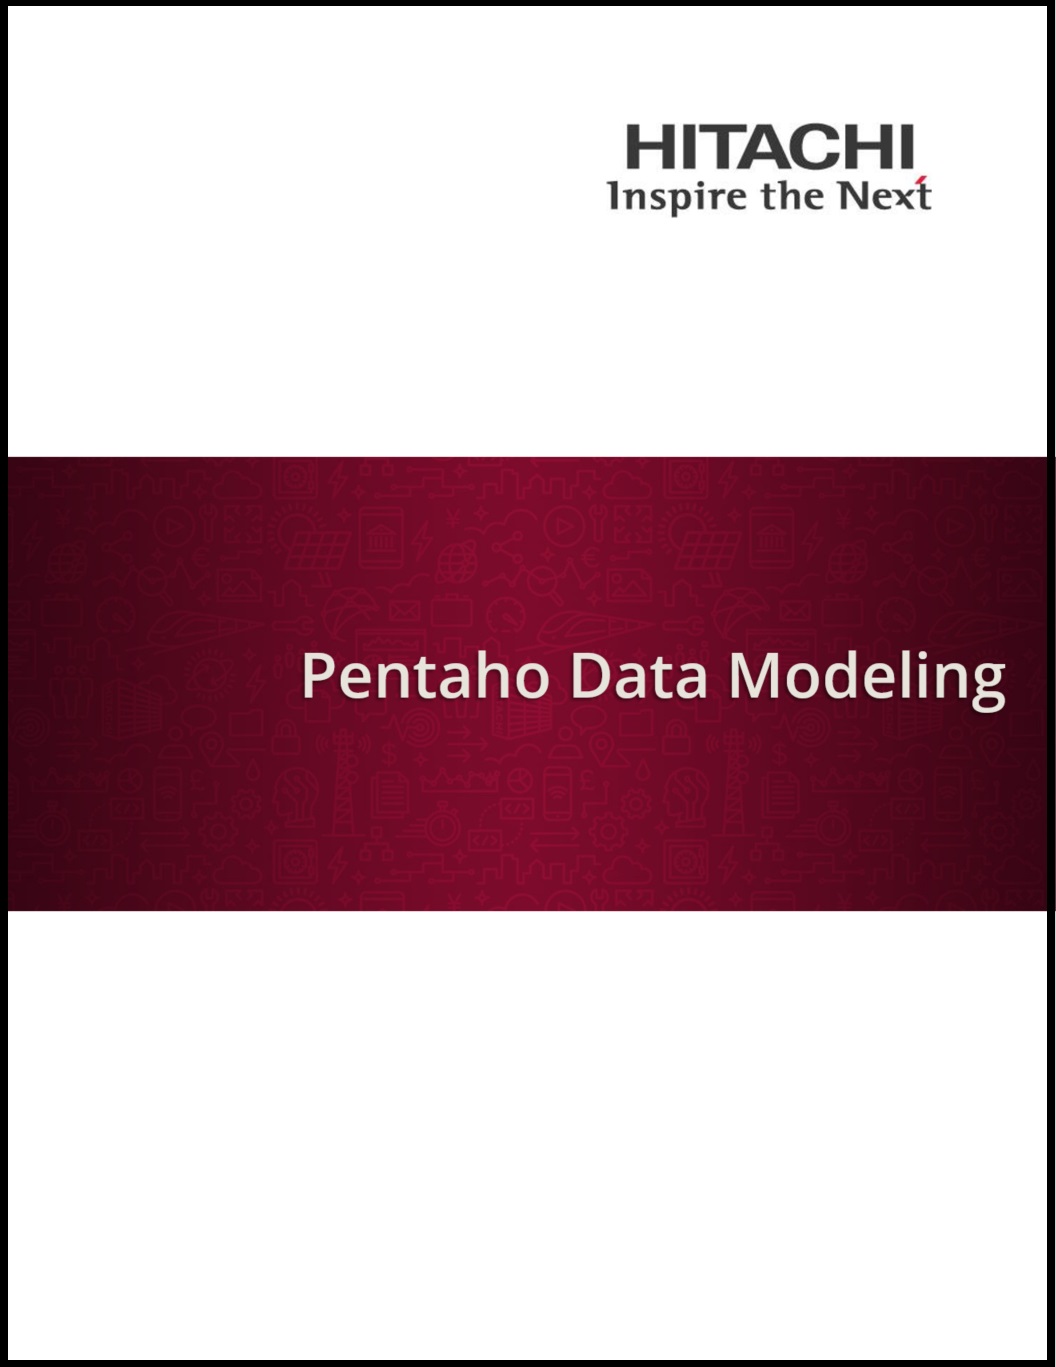 Pentaho_Data_Modeling.jpg